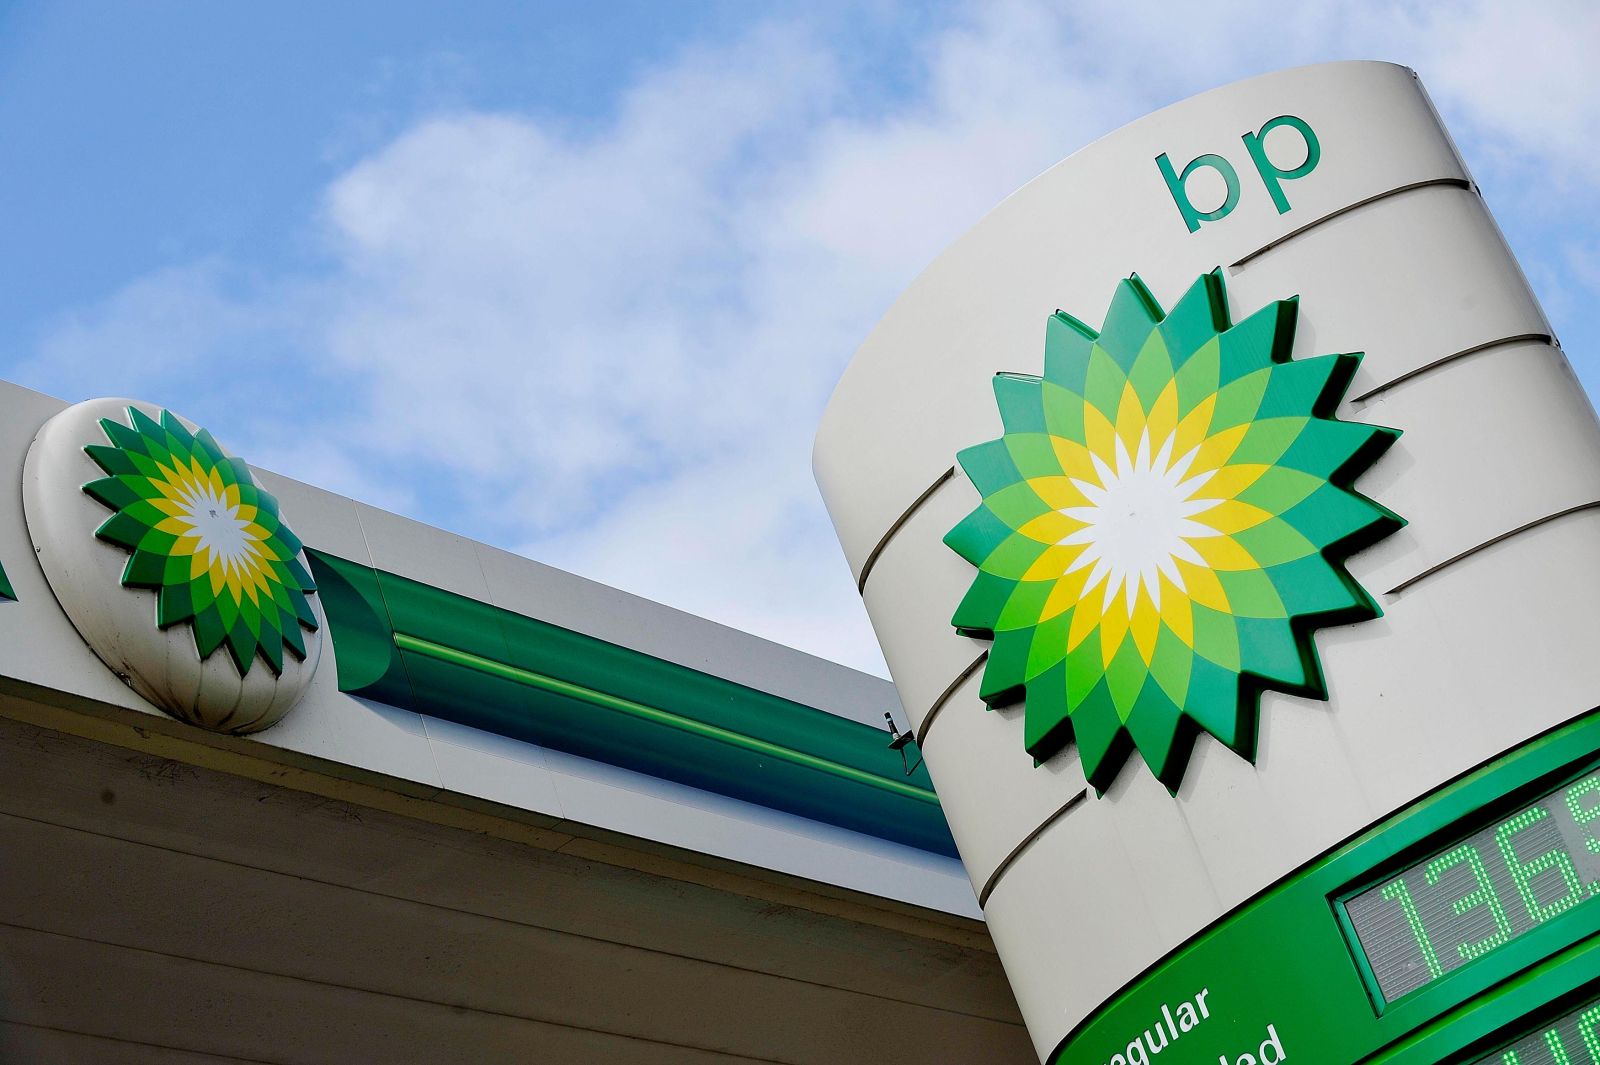 BP-də çalışan azərbaycanlı işçilərin sayı artıb